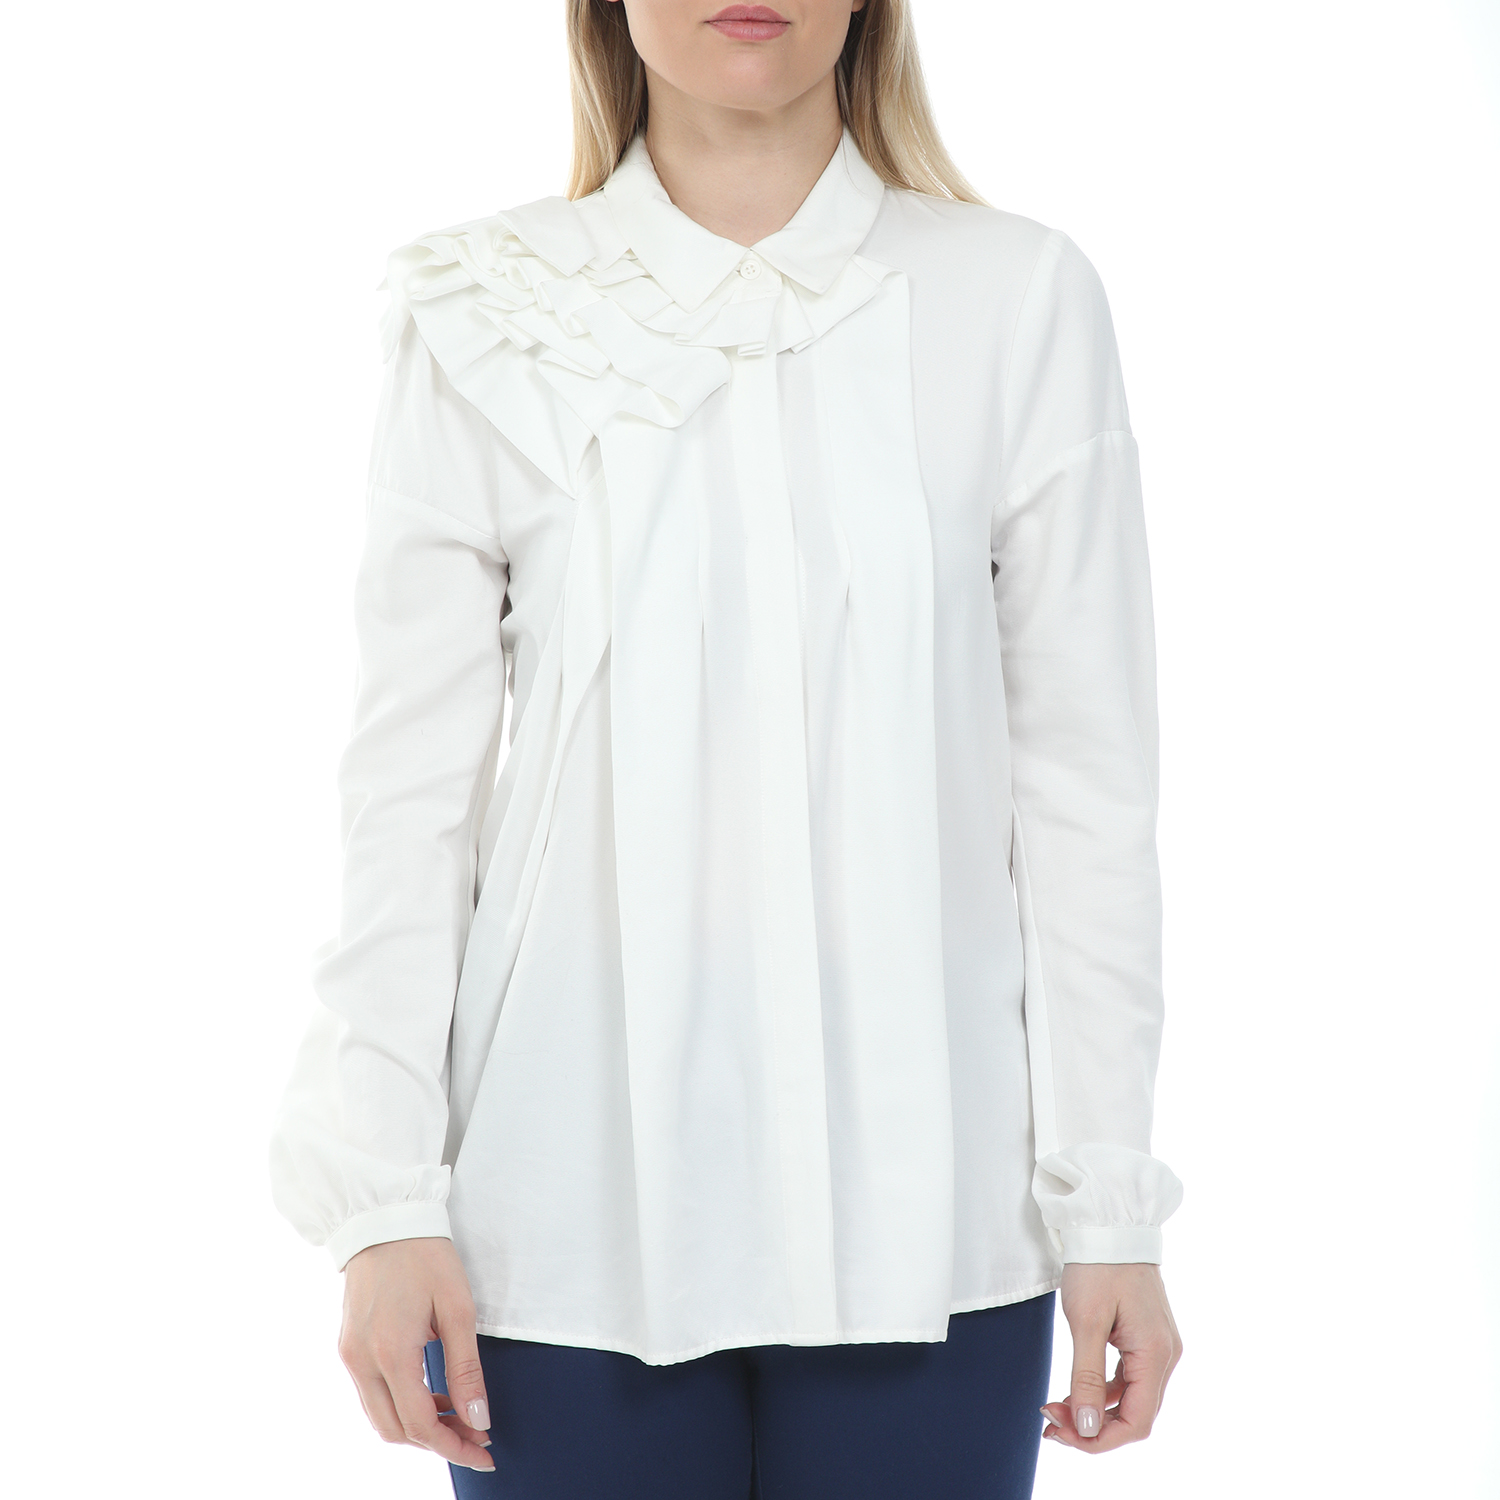 Γυναικεία/Ρούχα/Πουκάμισα/Μακρυμάνικα SILVIAN HEACH - Γυναικείο πουκάμισο SILVIAN HEACH PETRIZZI λευκό